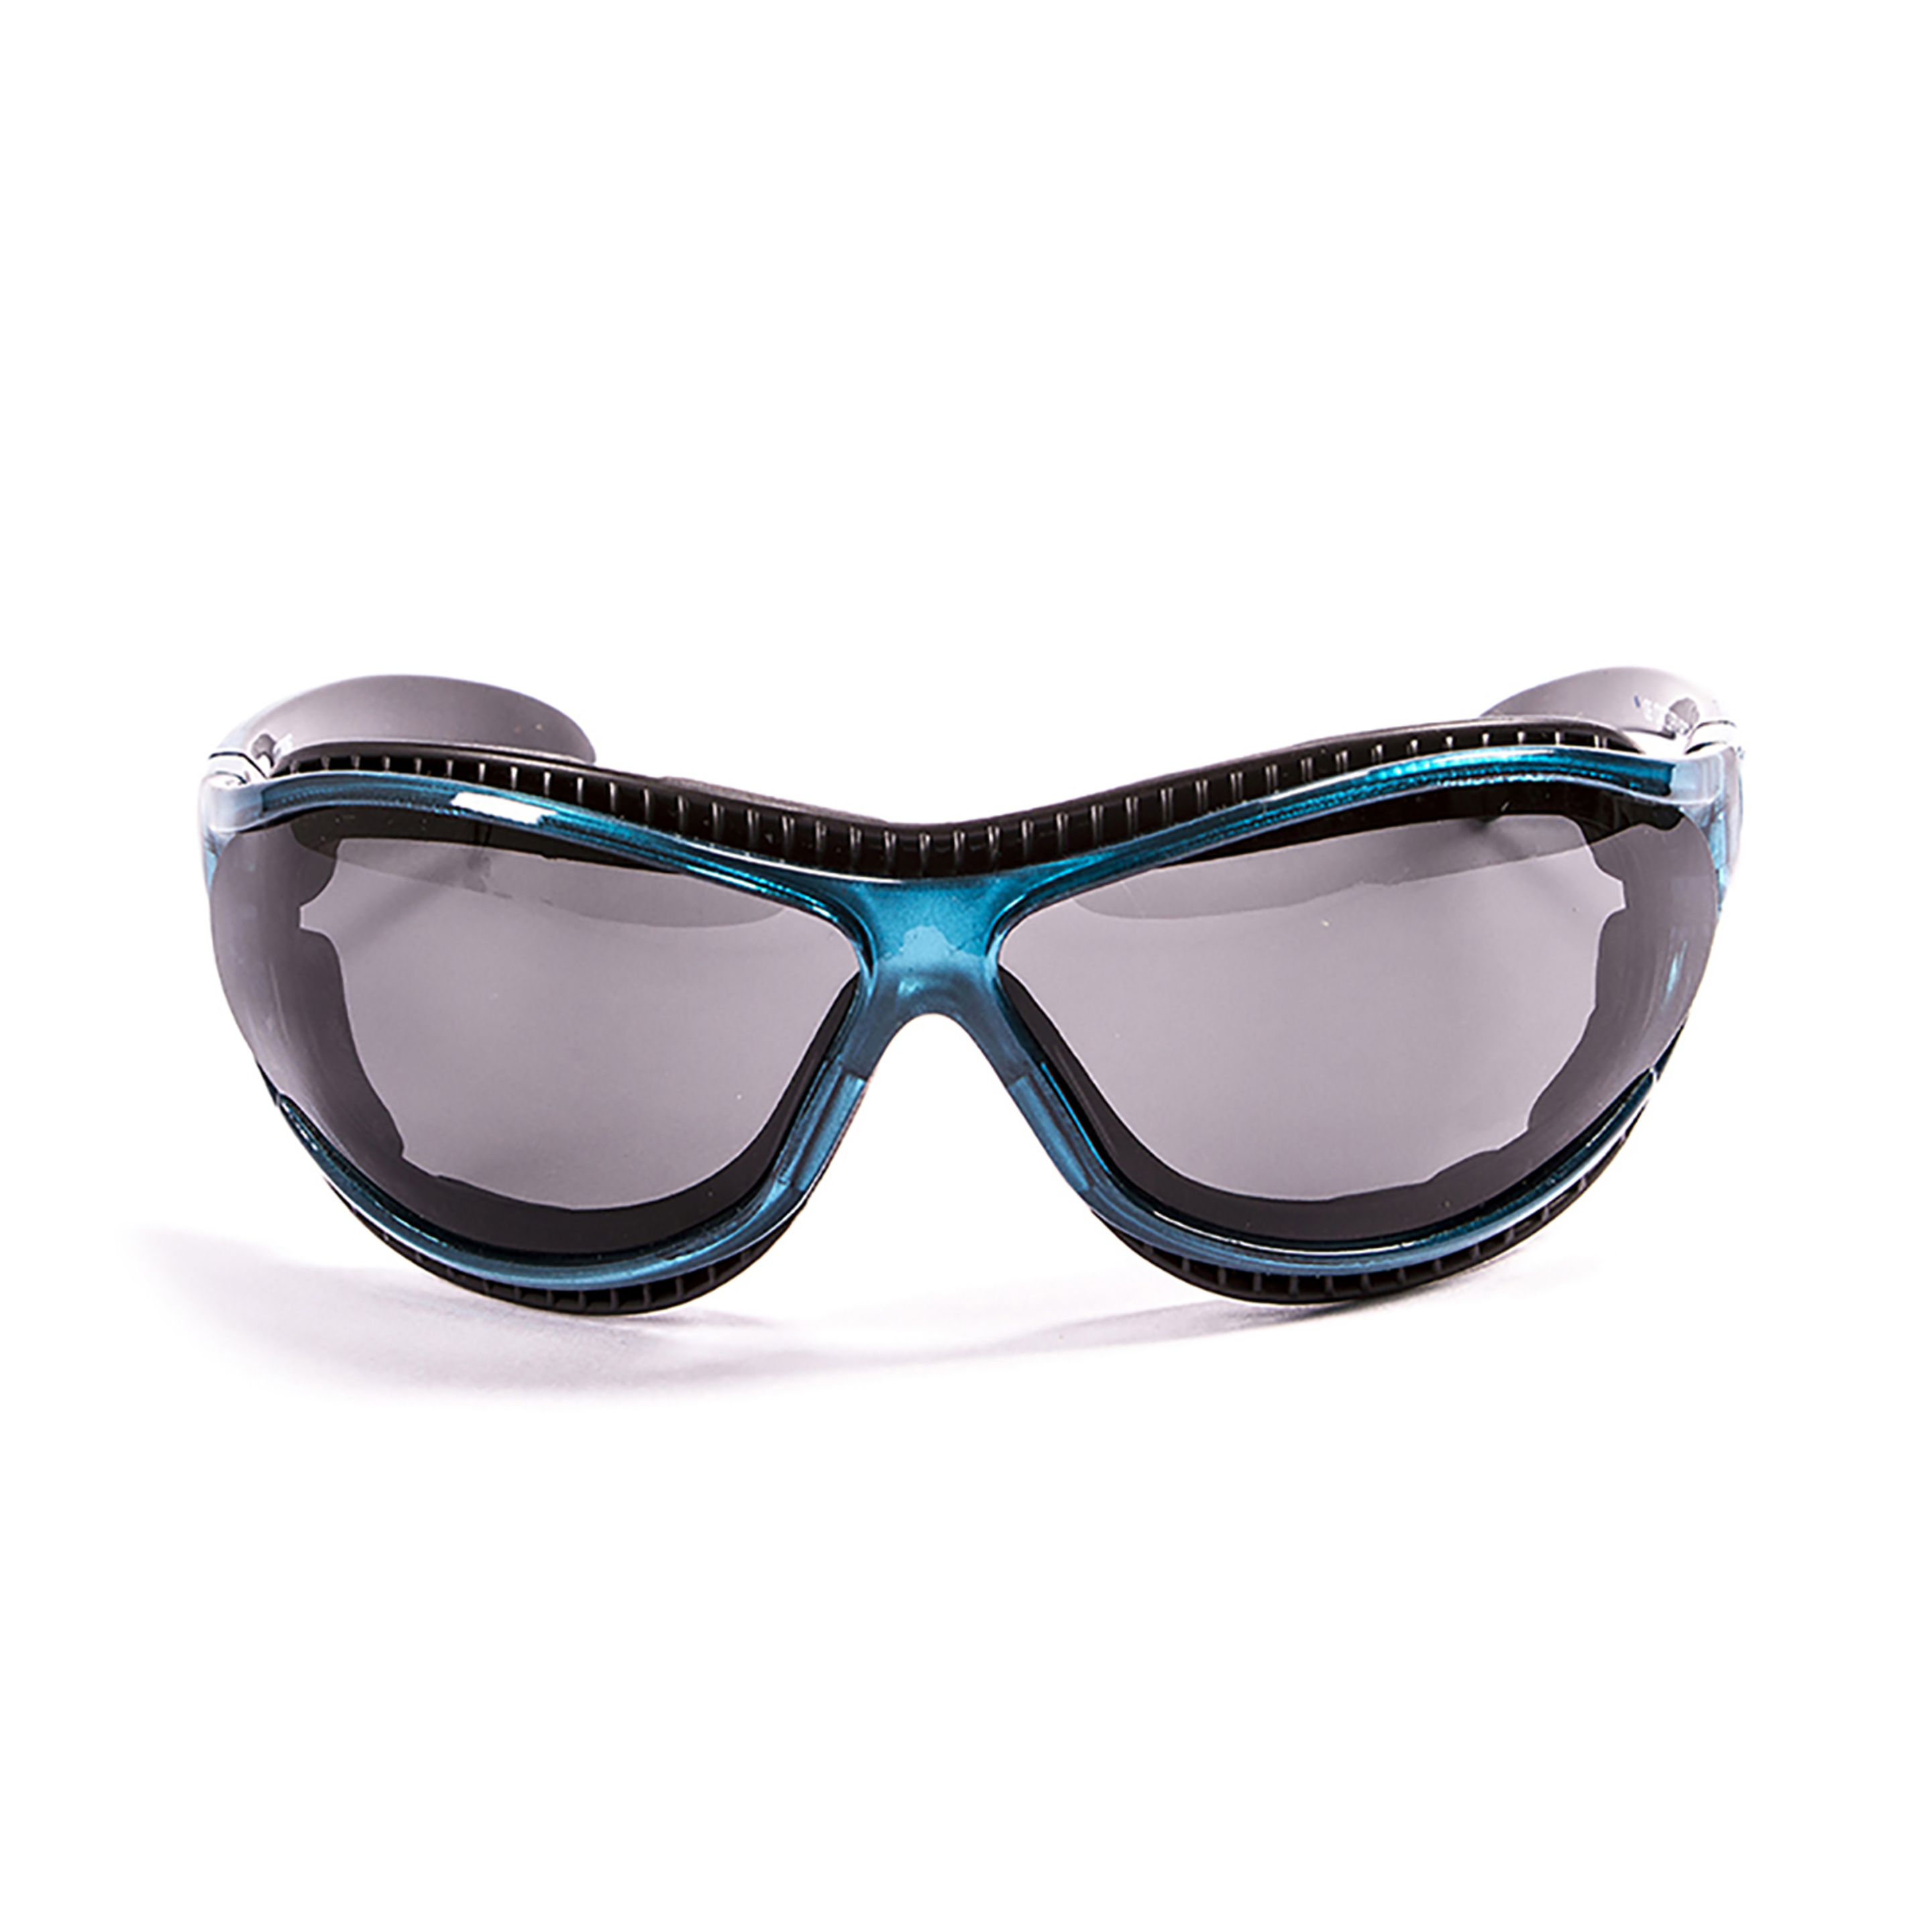 Gafas De Sol Técnicas Para La Práctica De Deportes De Agua Tierra De Fuego Ocean Sunglasses - negro-azul - 